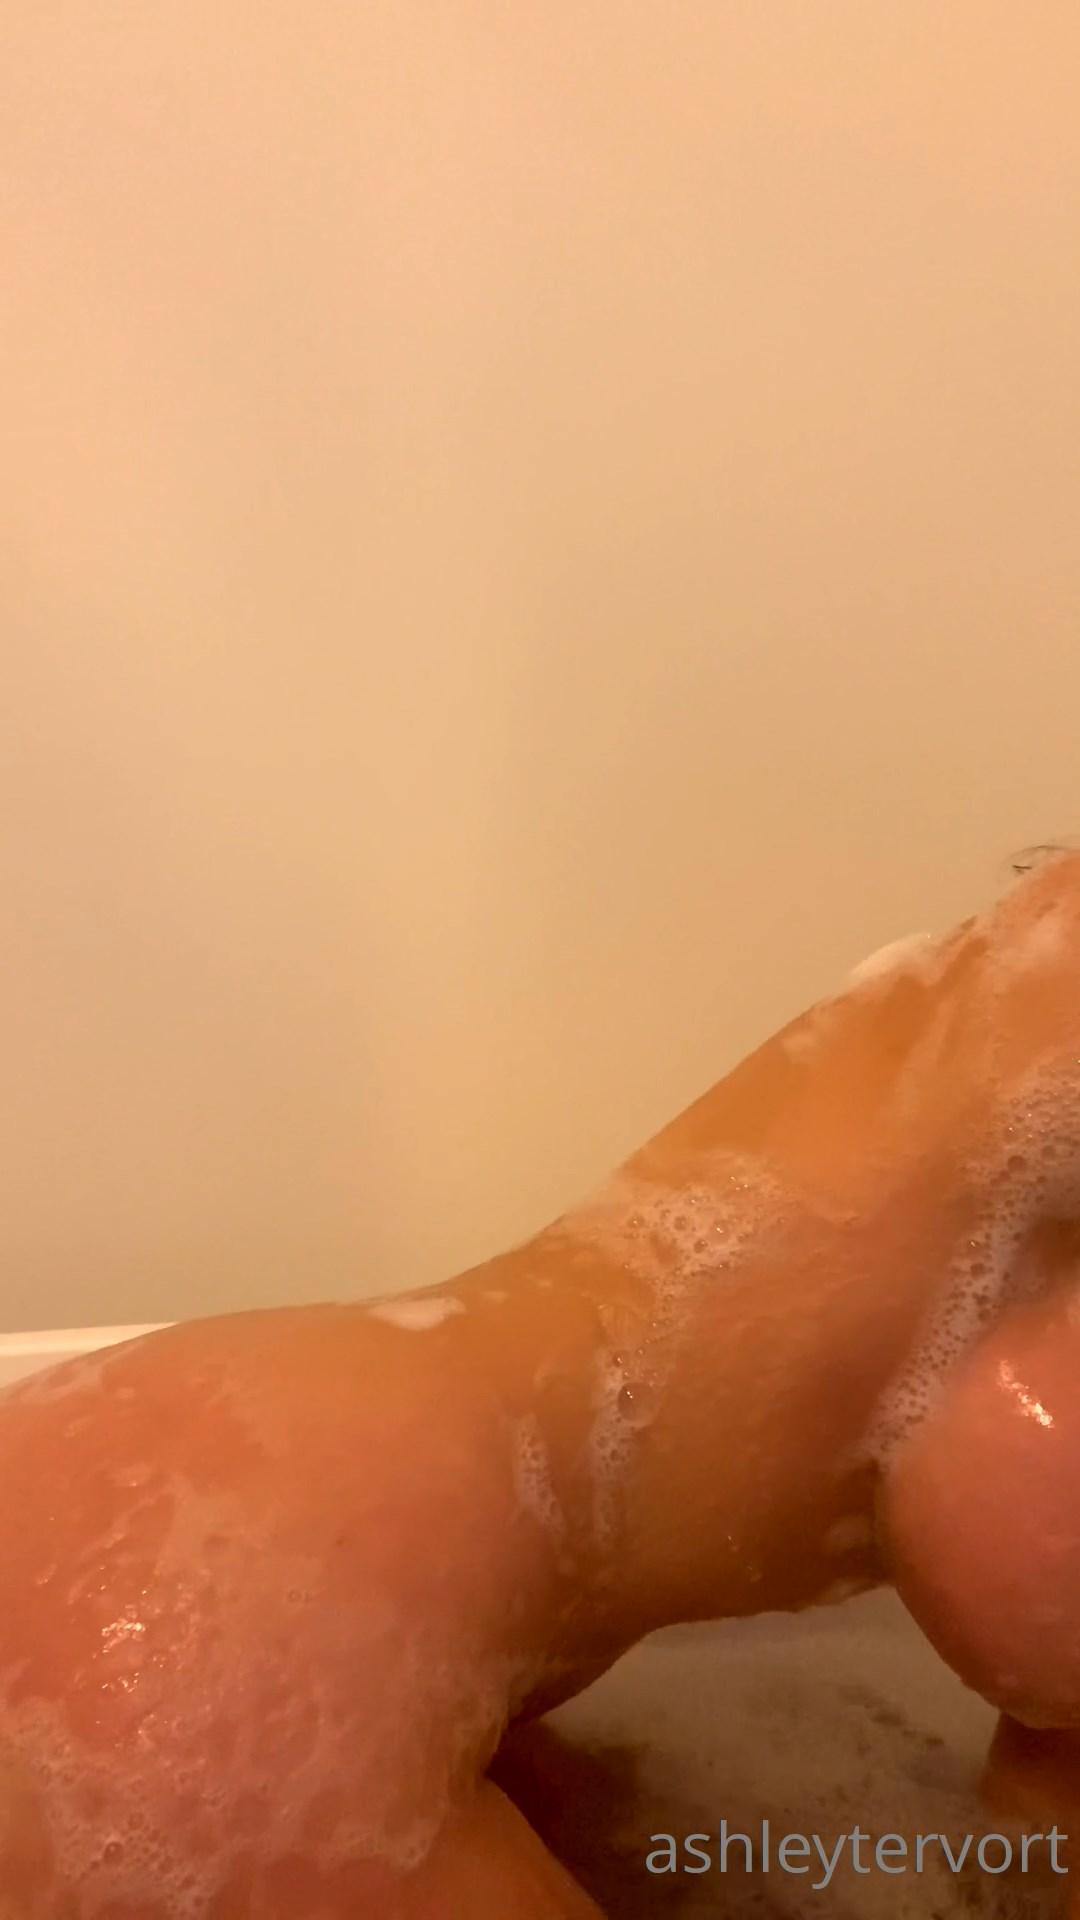 ashley tervort nude bath wash onlyfans video leaked VSJMUW